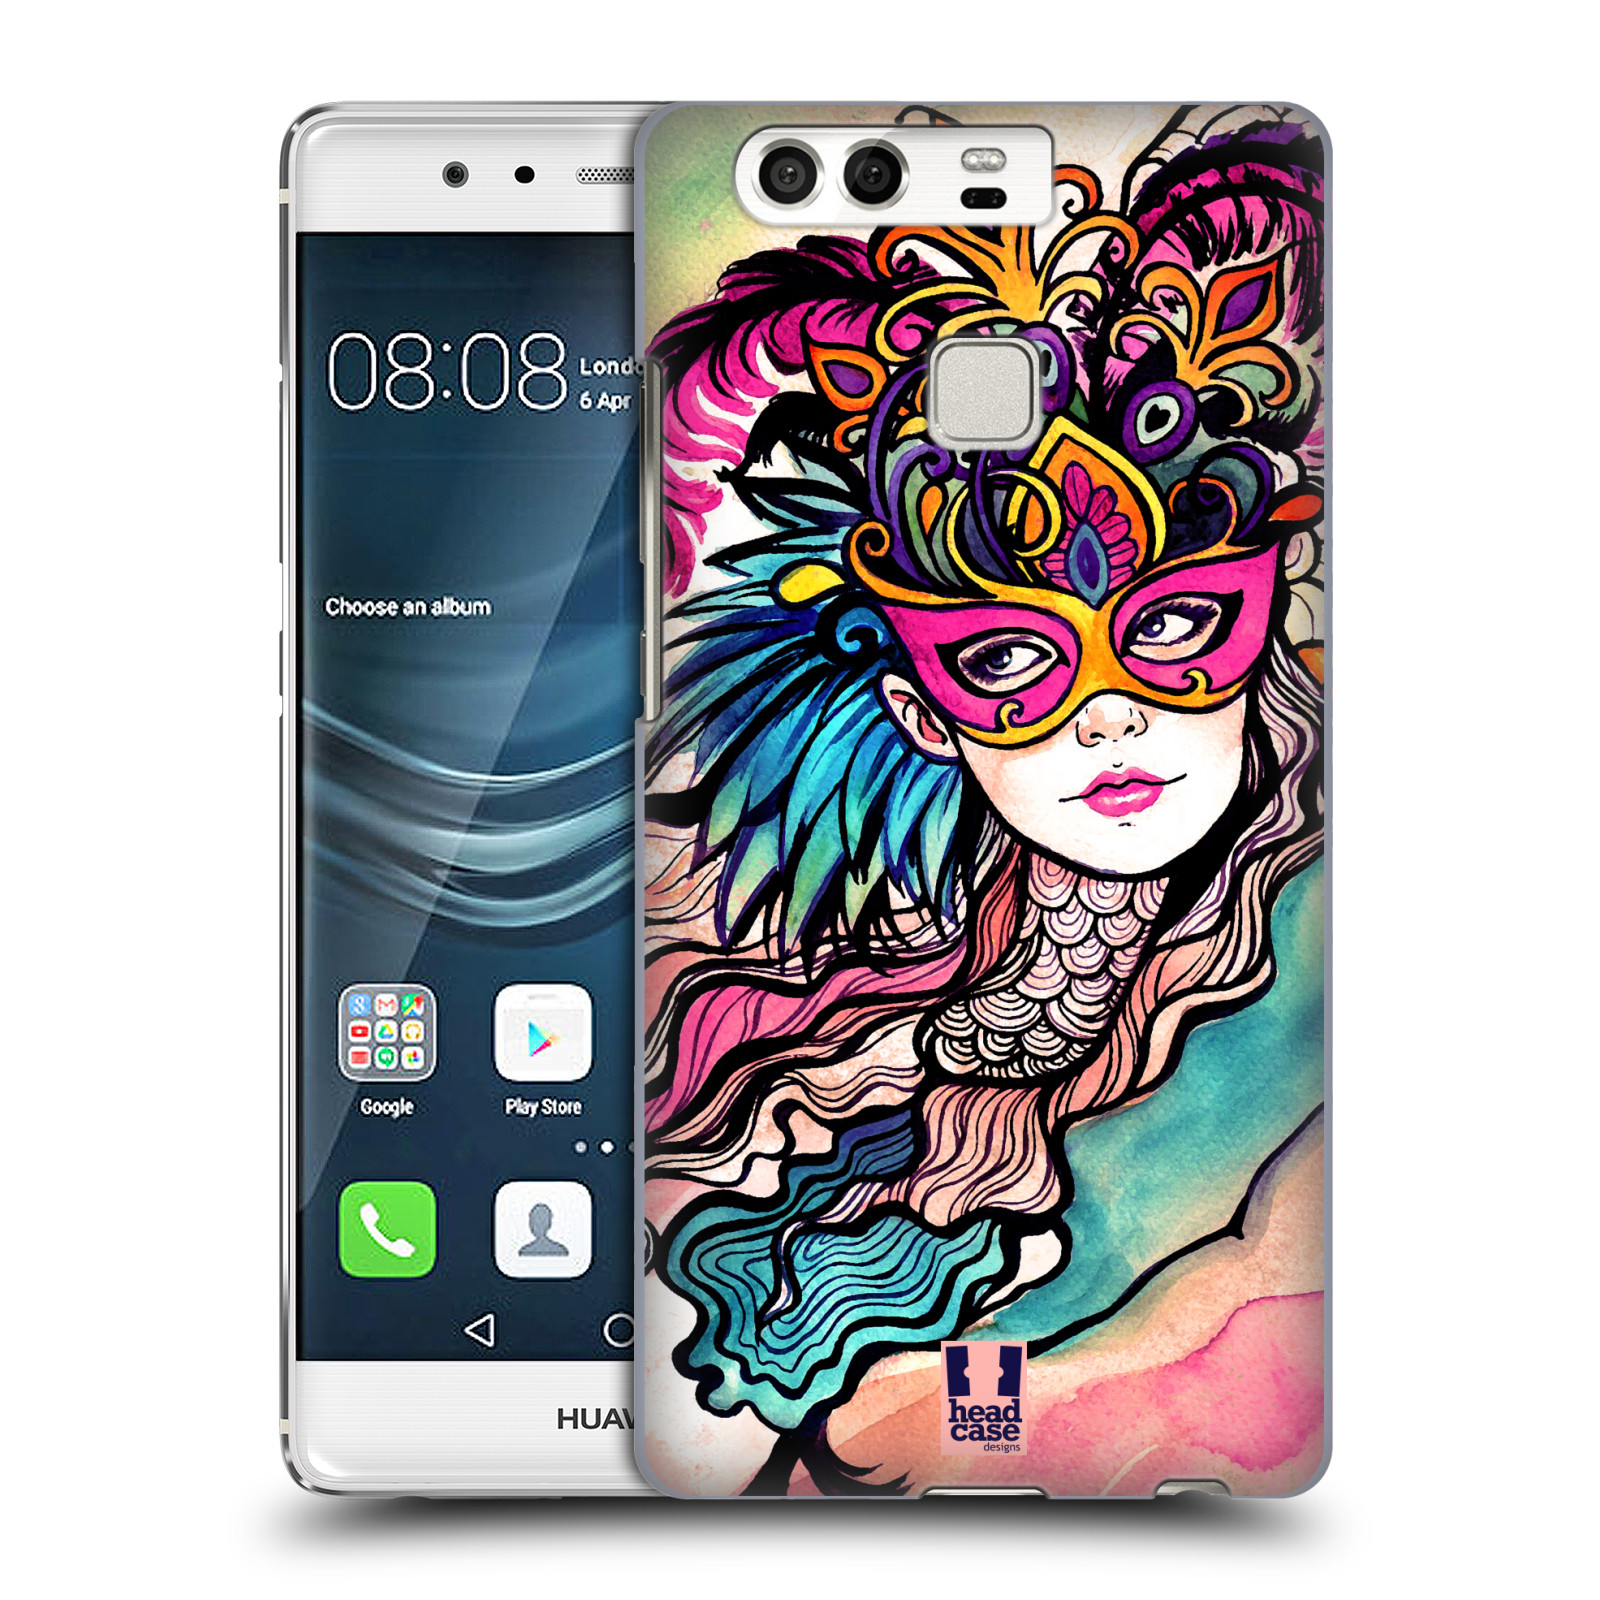 HEAD CASE plastový obal na mobil Huawei P9 / P9 DUAL SIM vzor Maškarní ples masky kreslené vzory růžová